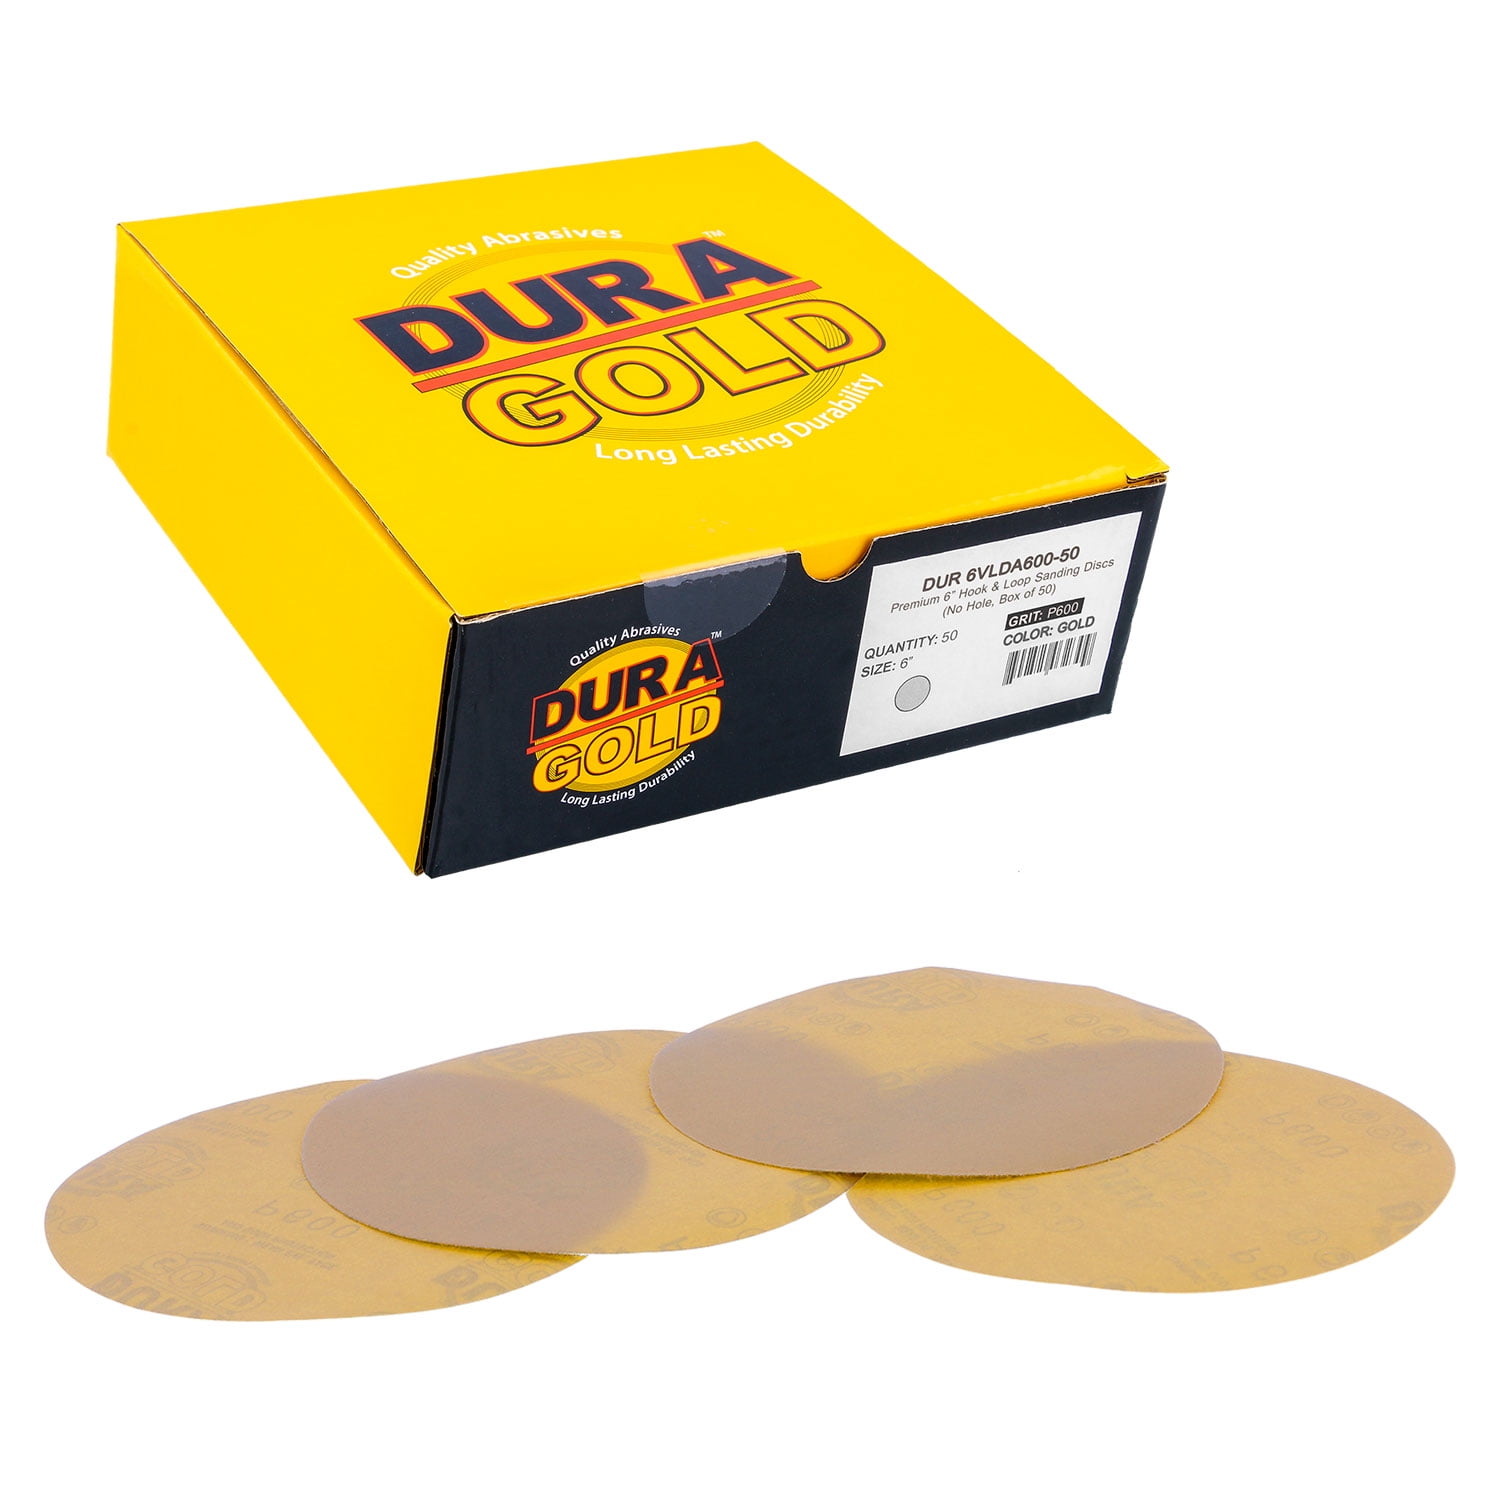 40 Grit Sanding Discs Premium Hook and Loop Heavy Duty Sandpaper for Random Orbital Sanders Serious Grit 6-Inch 17-Hole 25 PACK BOX 